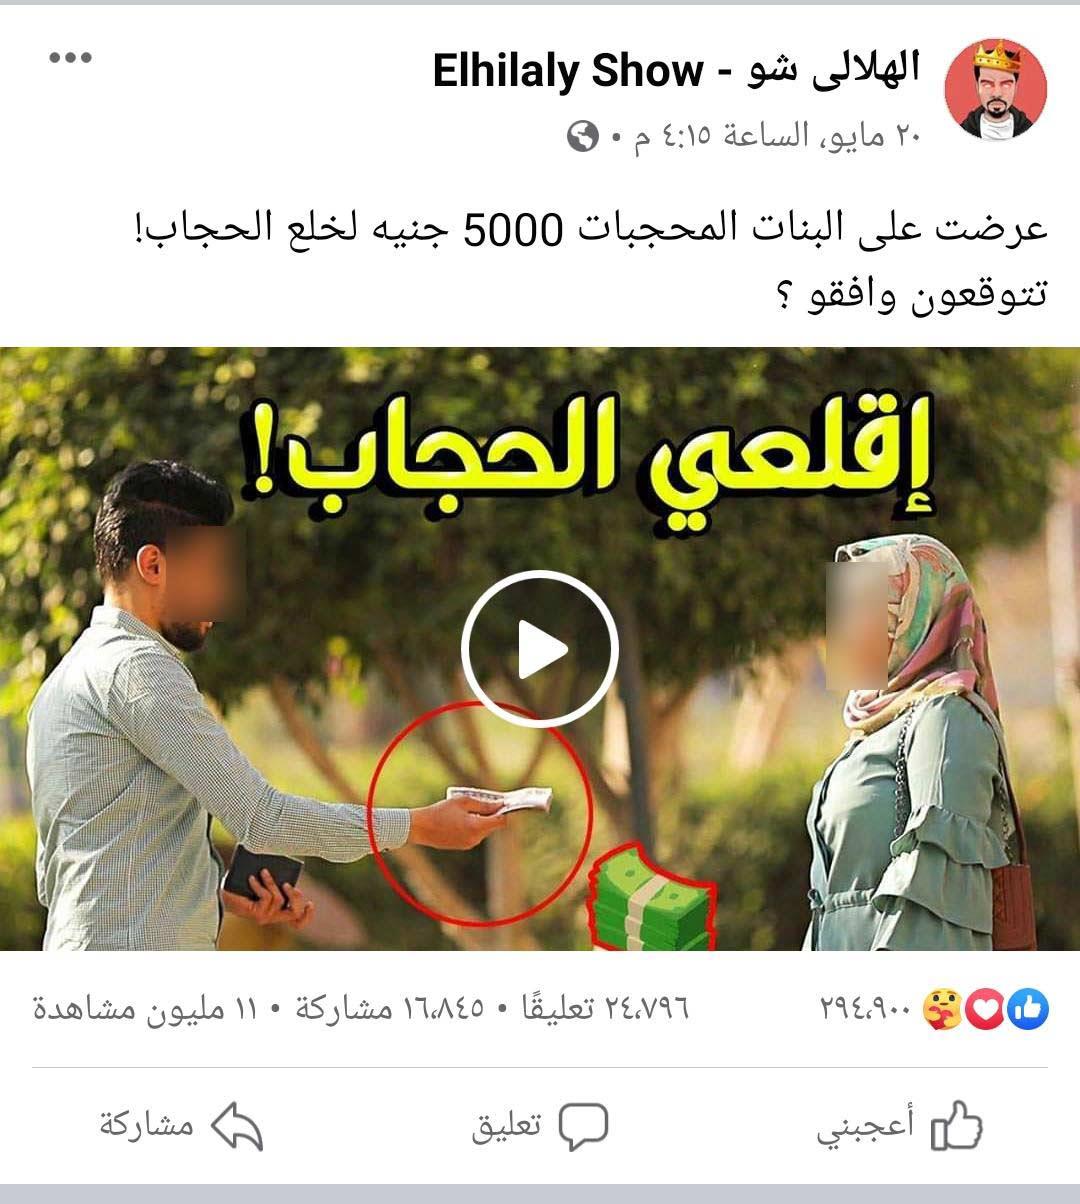 "فيديو وصور" سقوط مسؤولي صفحة الهلالي شو في قبضة الأمن بعد مقطع "خلع الحجاب بـ5000 جنيه" 2